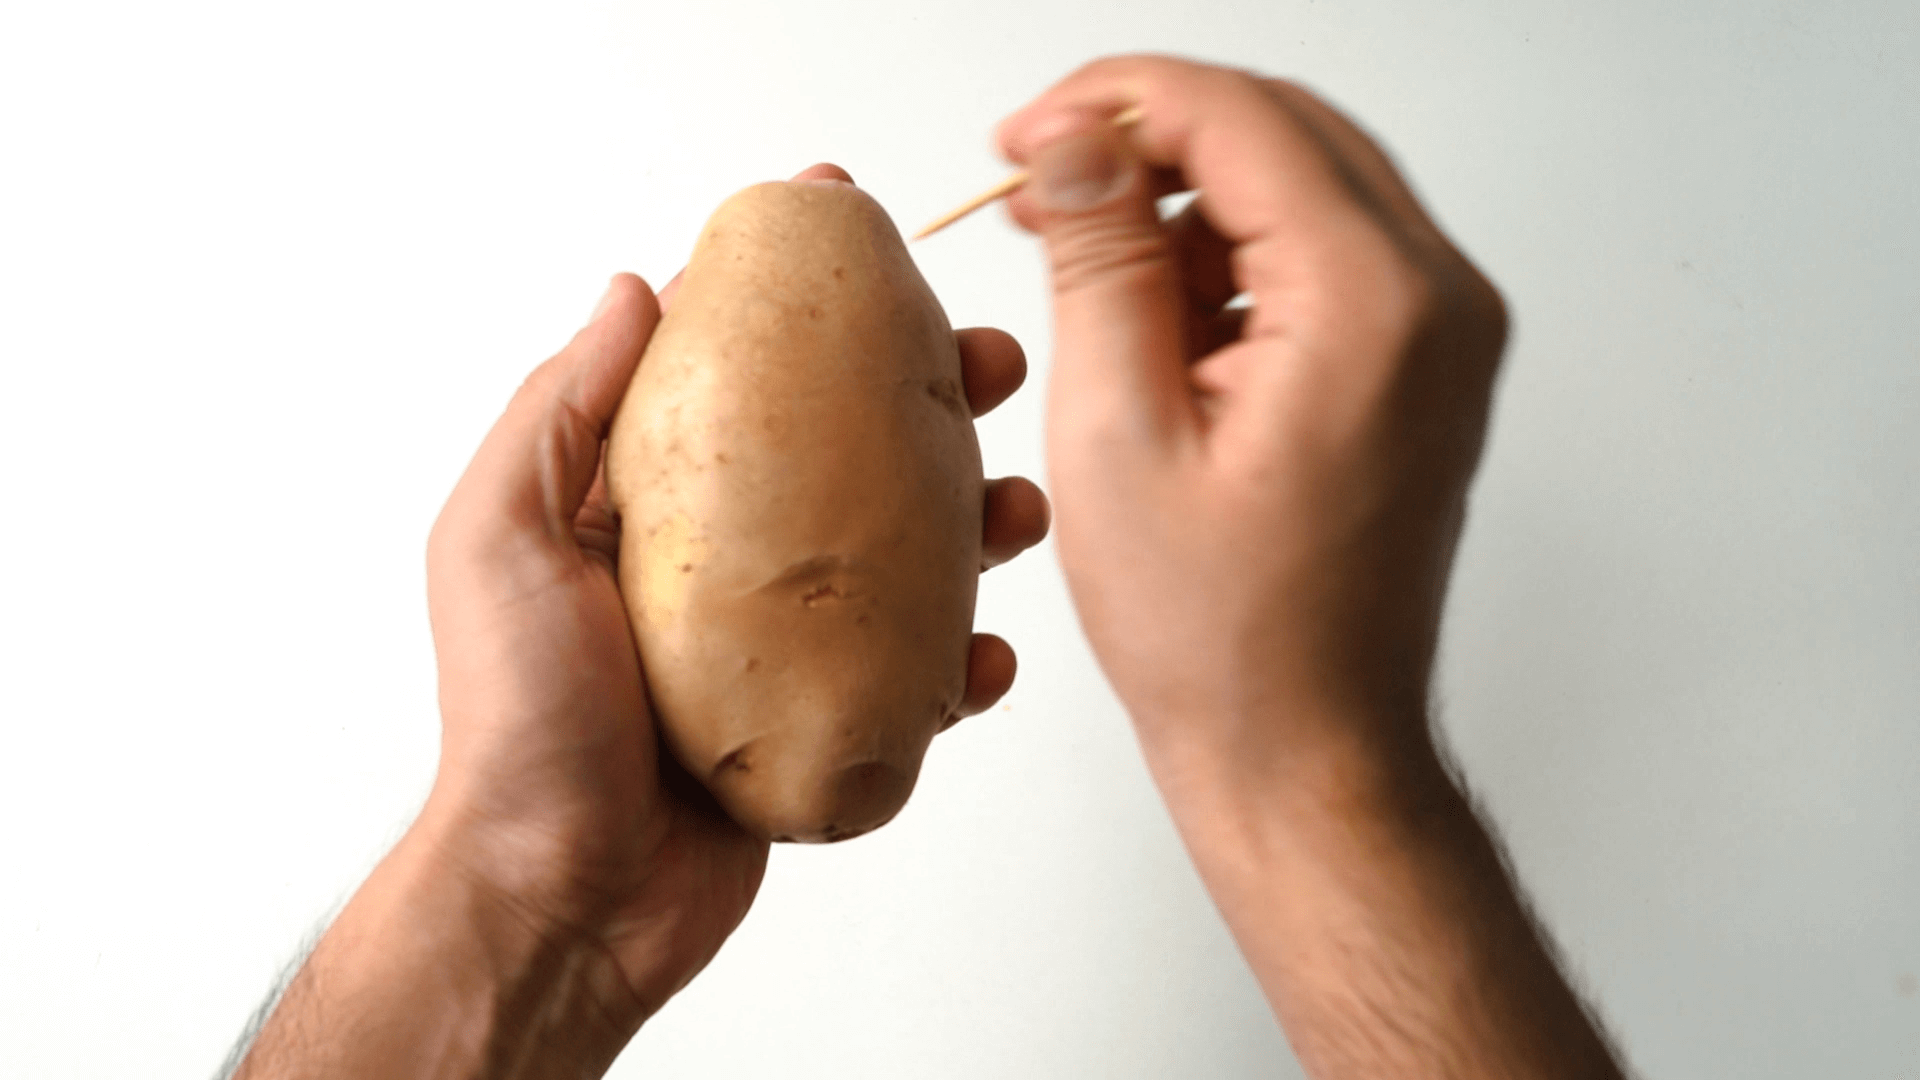 Potato Wedges